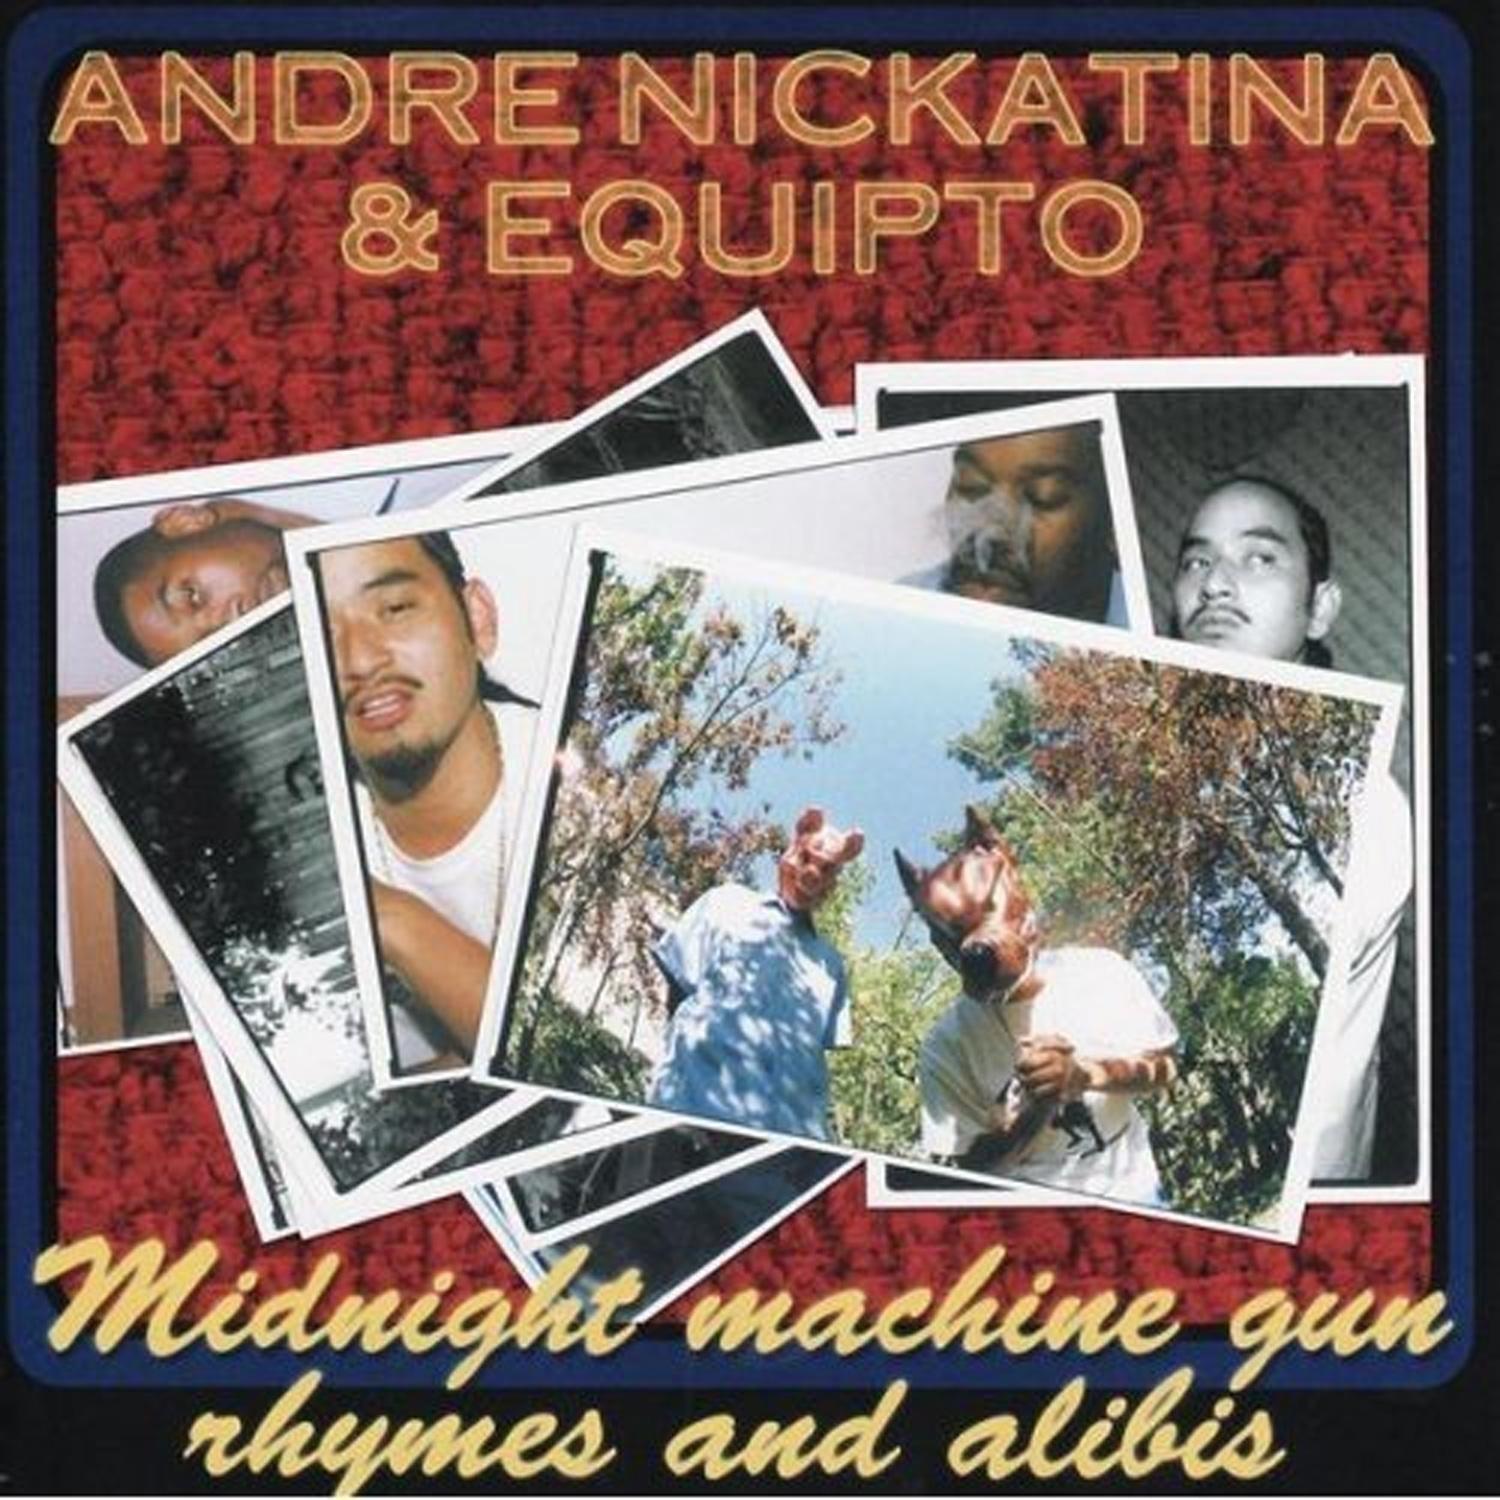 Andre Nickatina - Say Hey